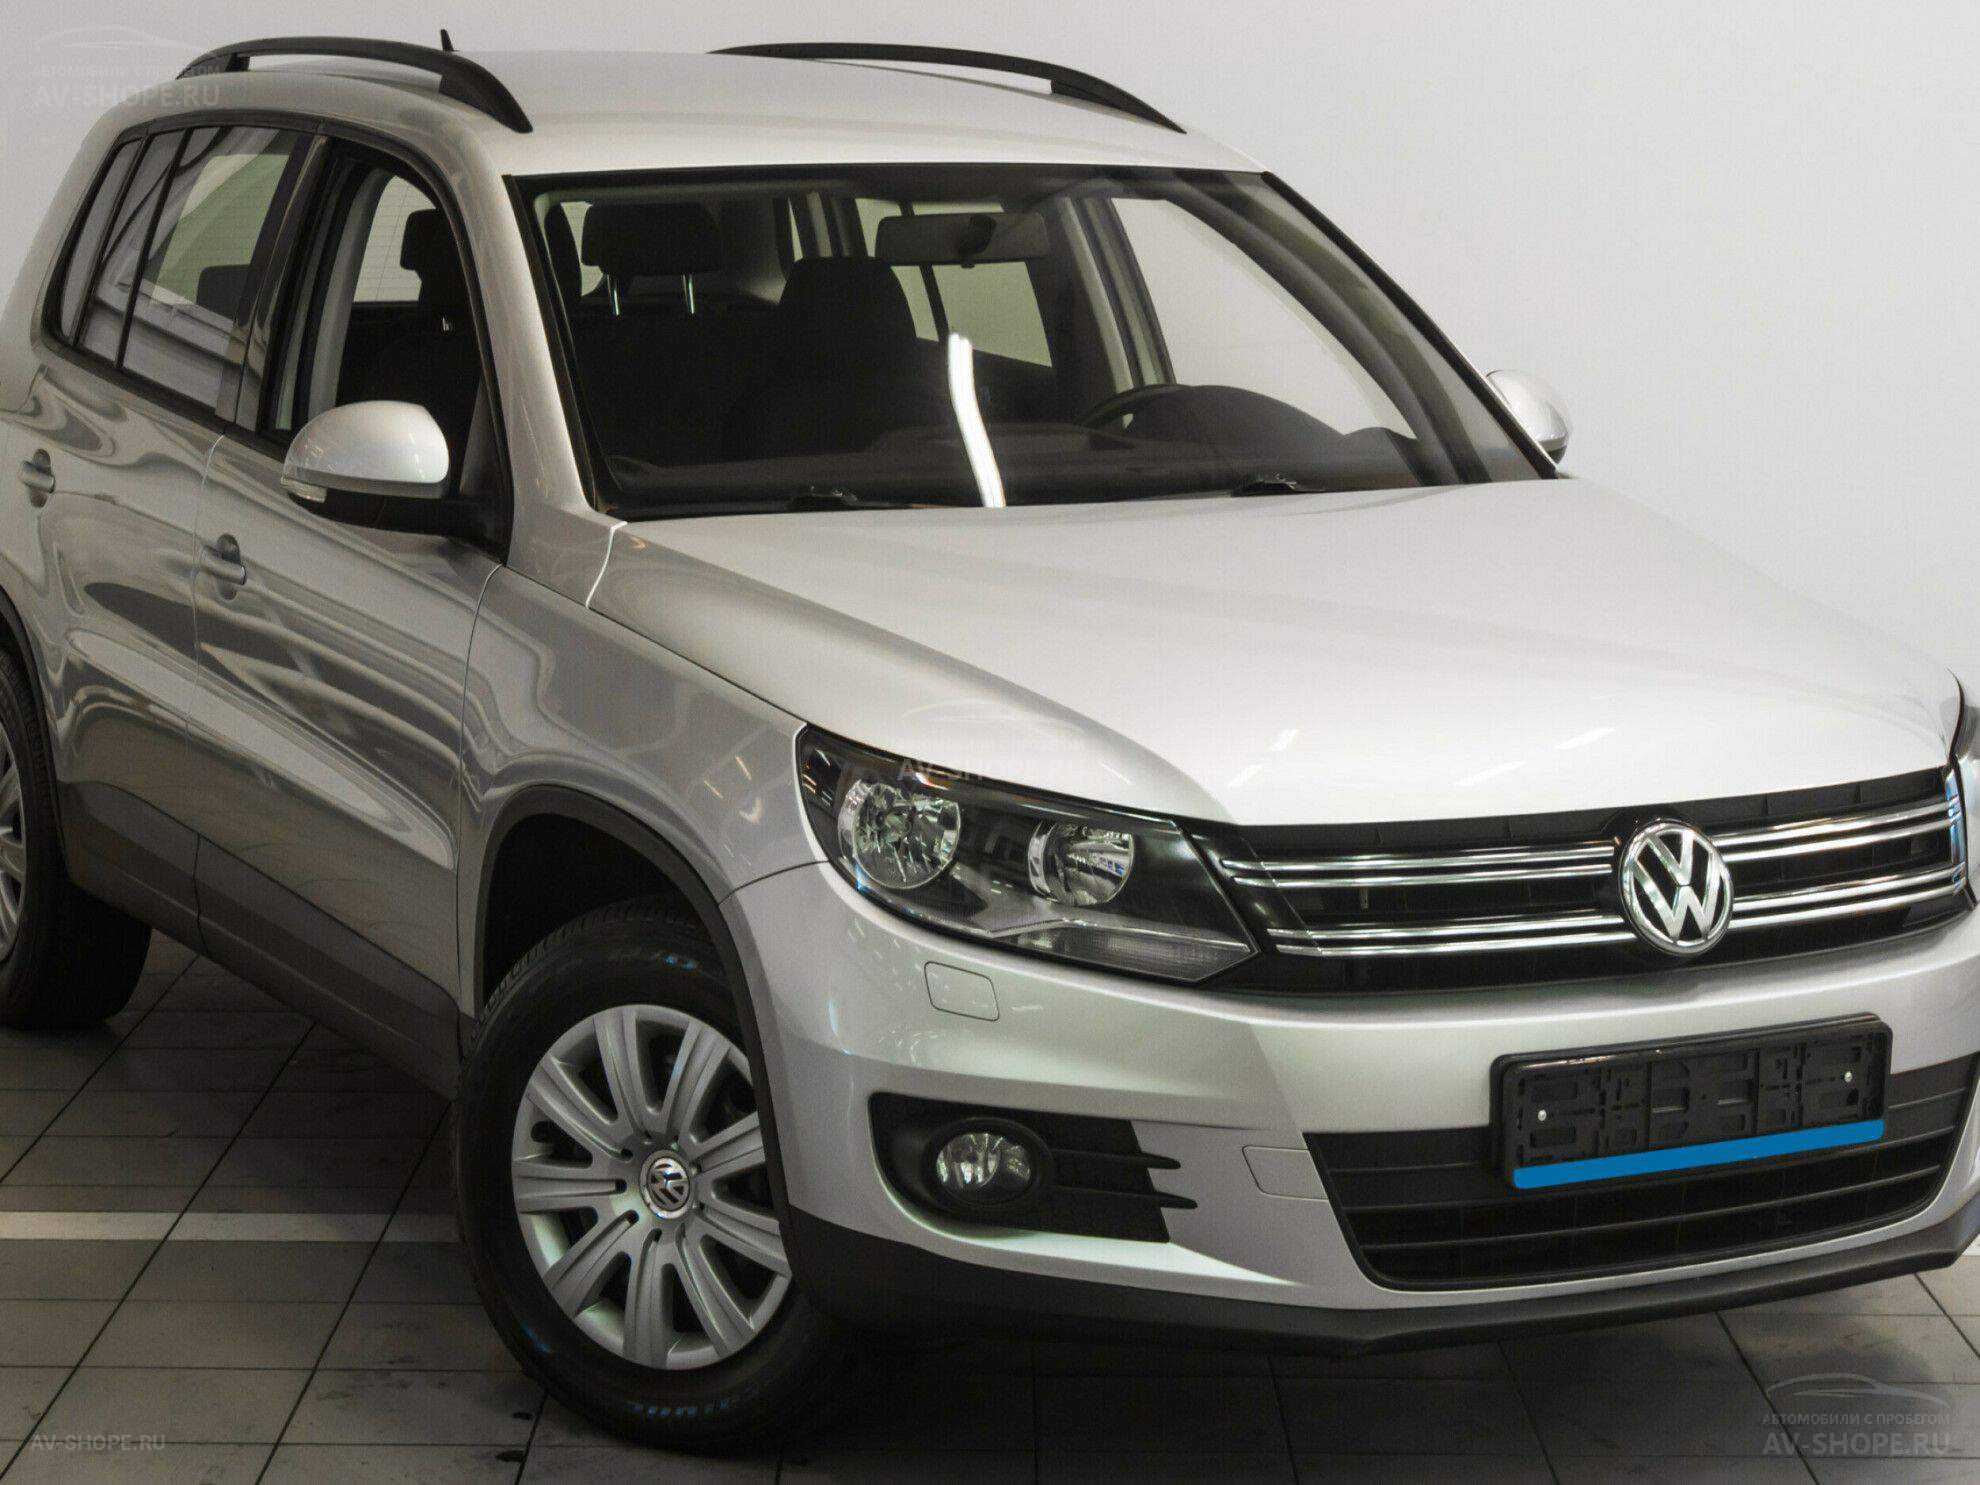 Купить фольксваген тигуан 2012 год. Volkswagen Tiguan 1.4 (150 л.с.). Tiguan 2012. Volkswagen Tiguan 2012 года. VW Tiguan 1 2012.